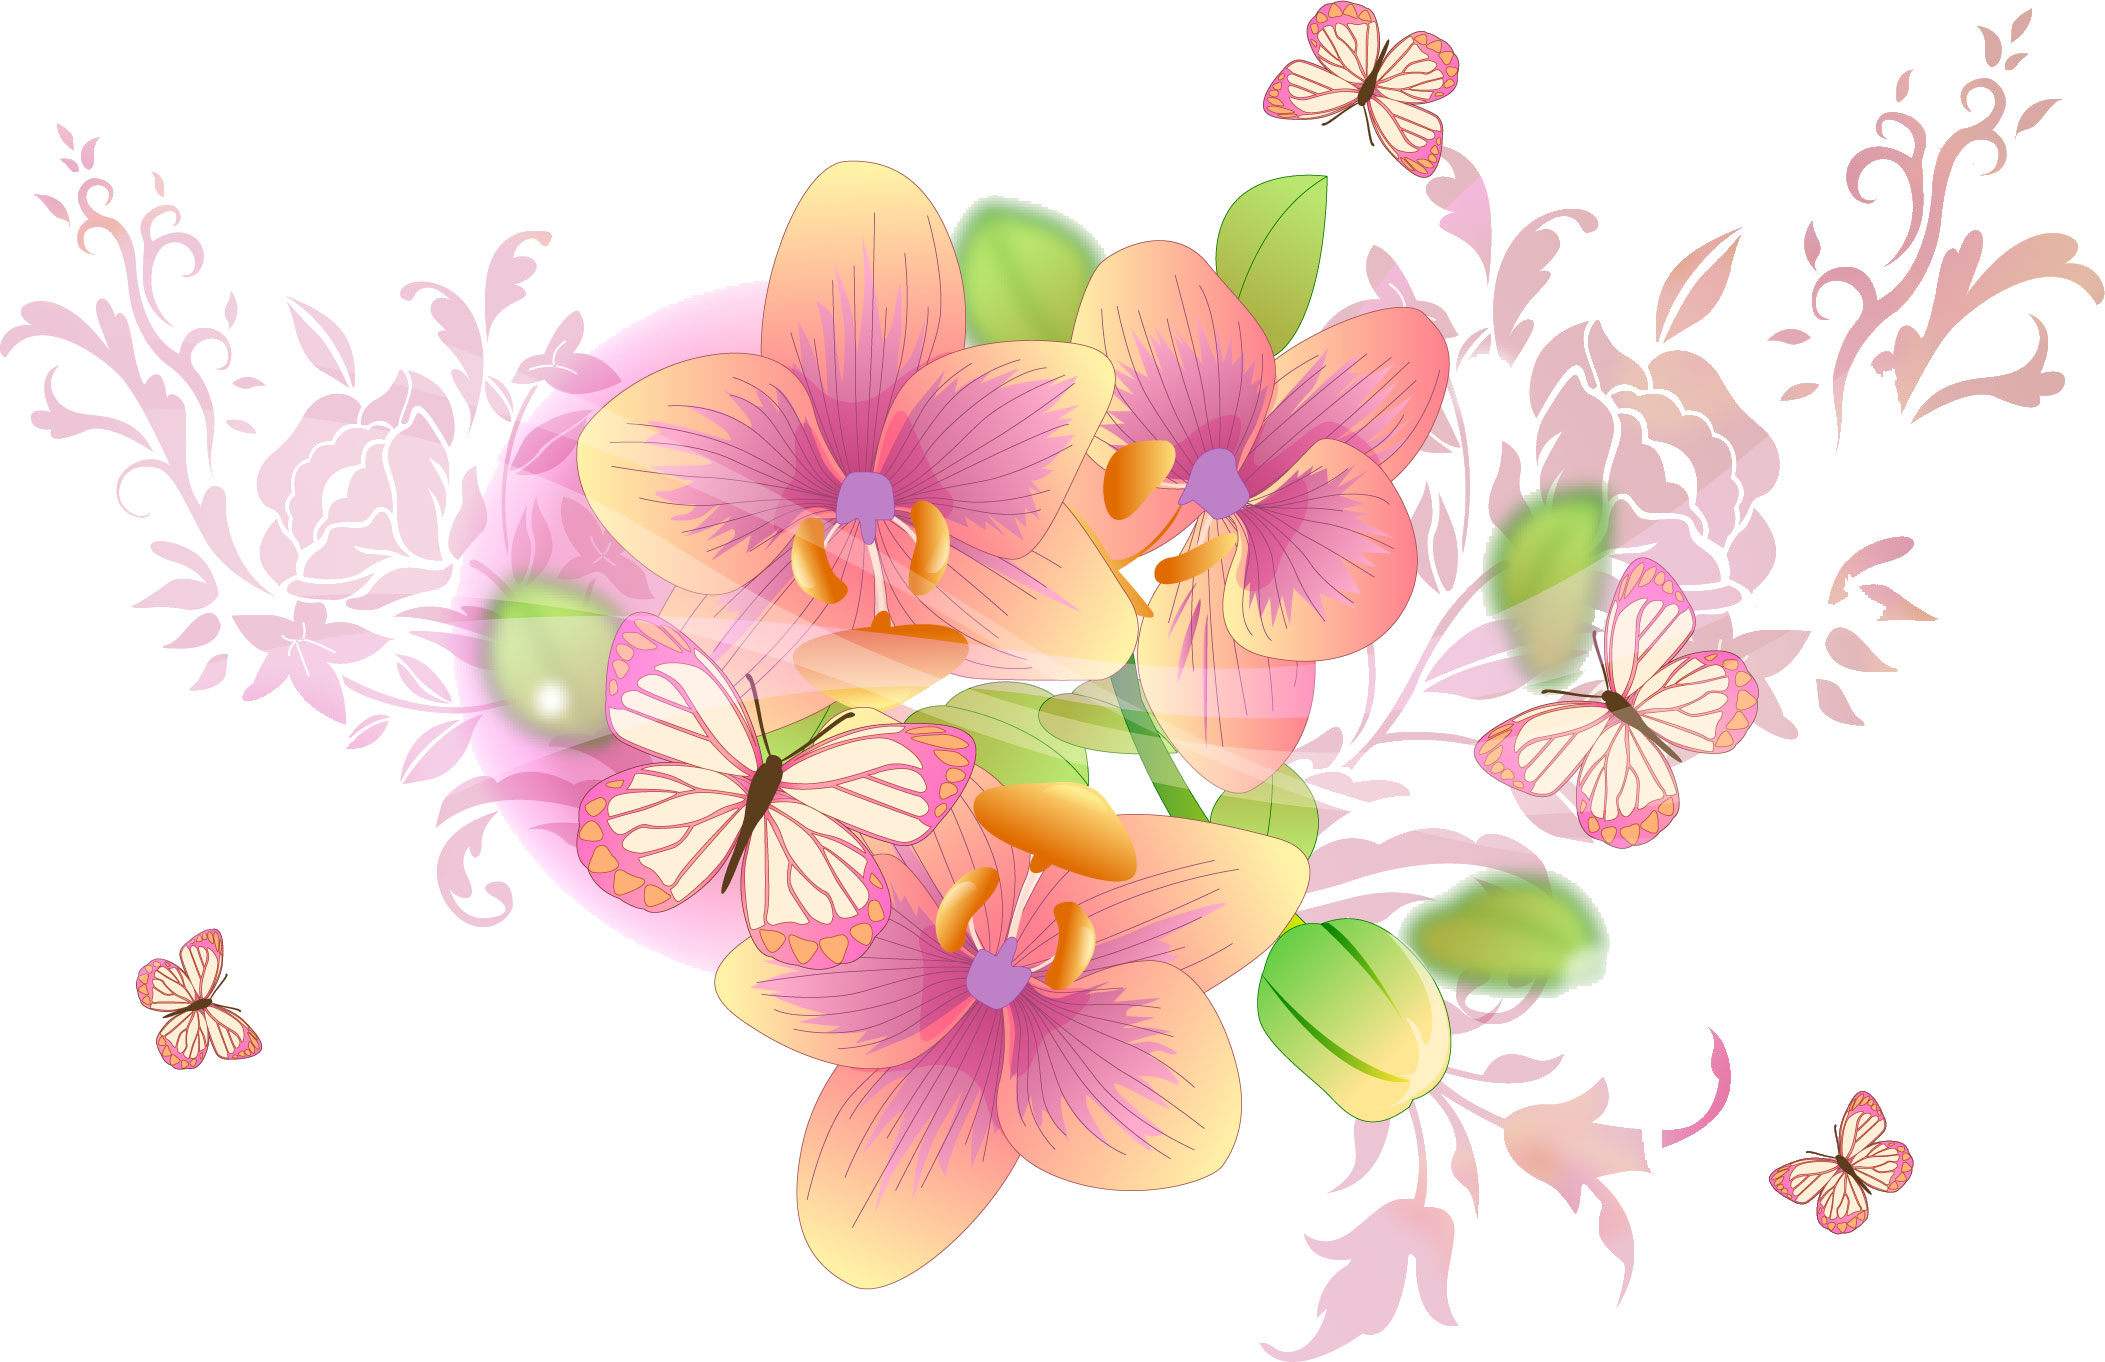 ラン 蘭 のイラスト 画像no 85 ピンクのコチョウラン 無料のフリー素材集 百花繚乱